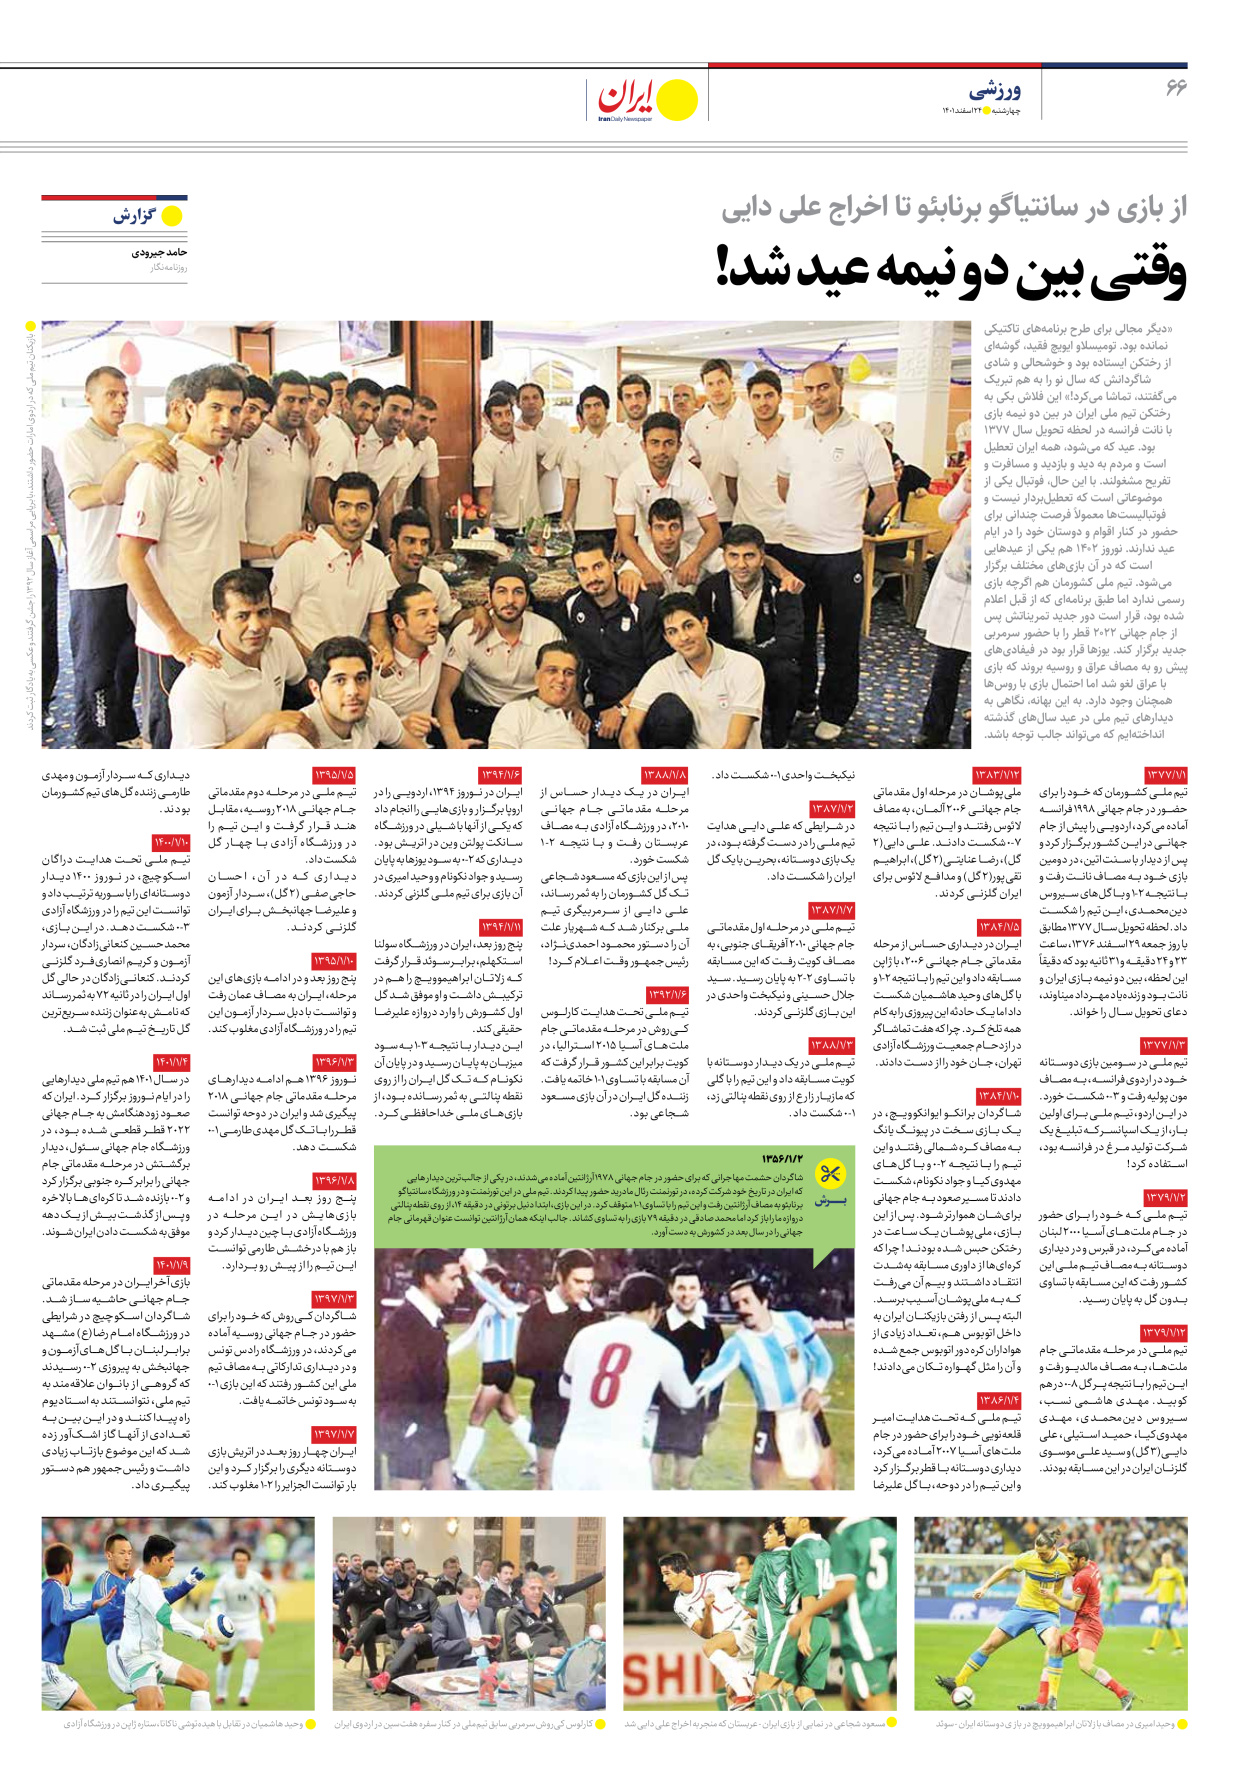 روزنامه ایران - ویژه نامه ویژه نوروز - ۲۴ اسفند ۱۴۰۱ - صفحه ۶۶